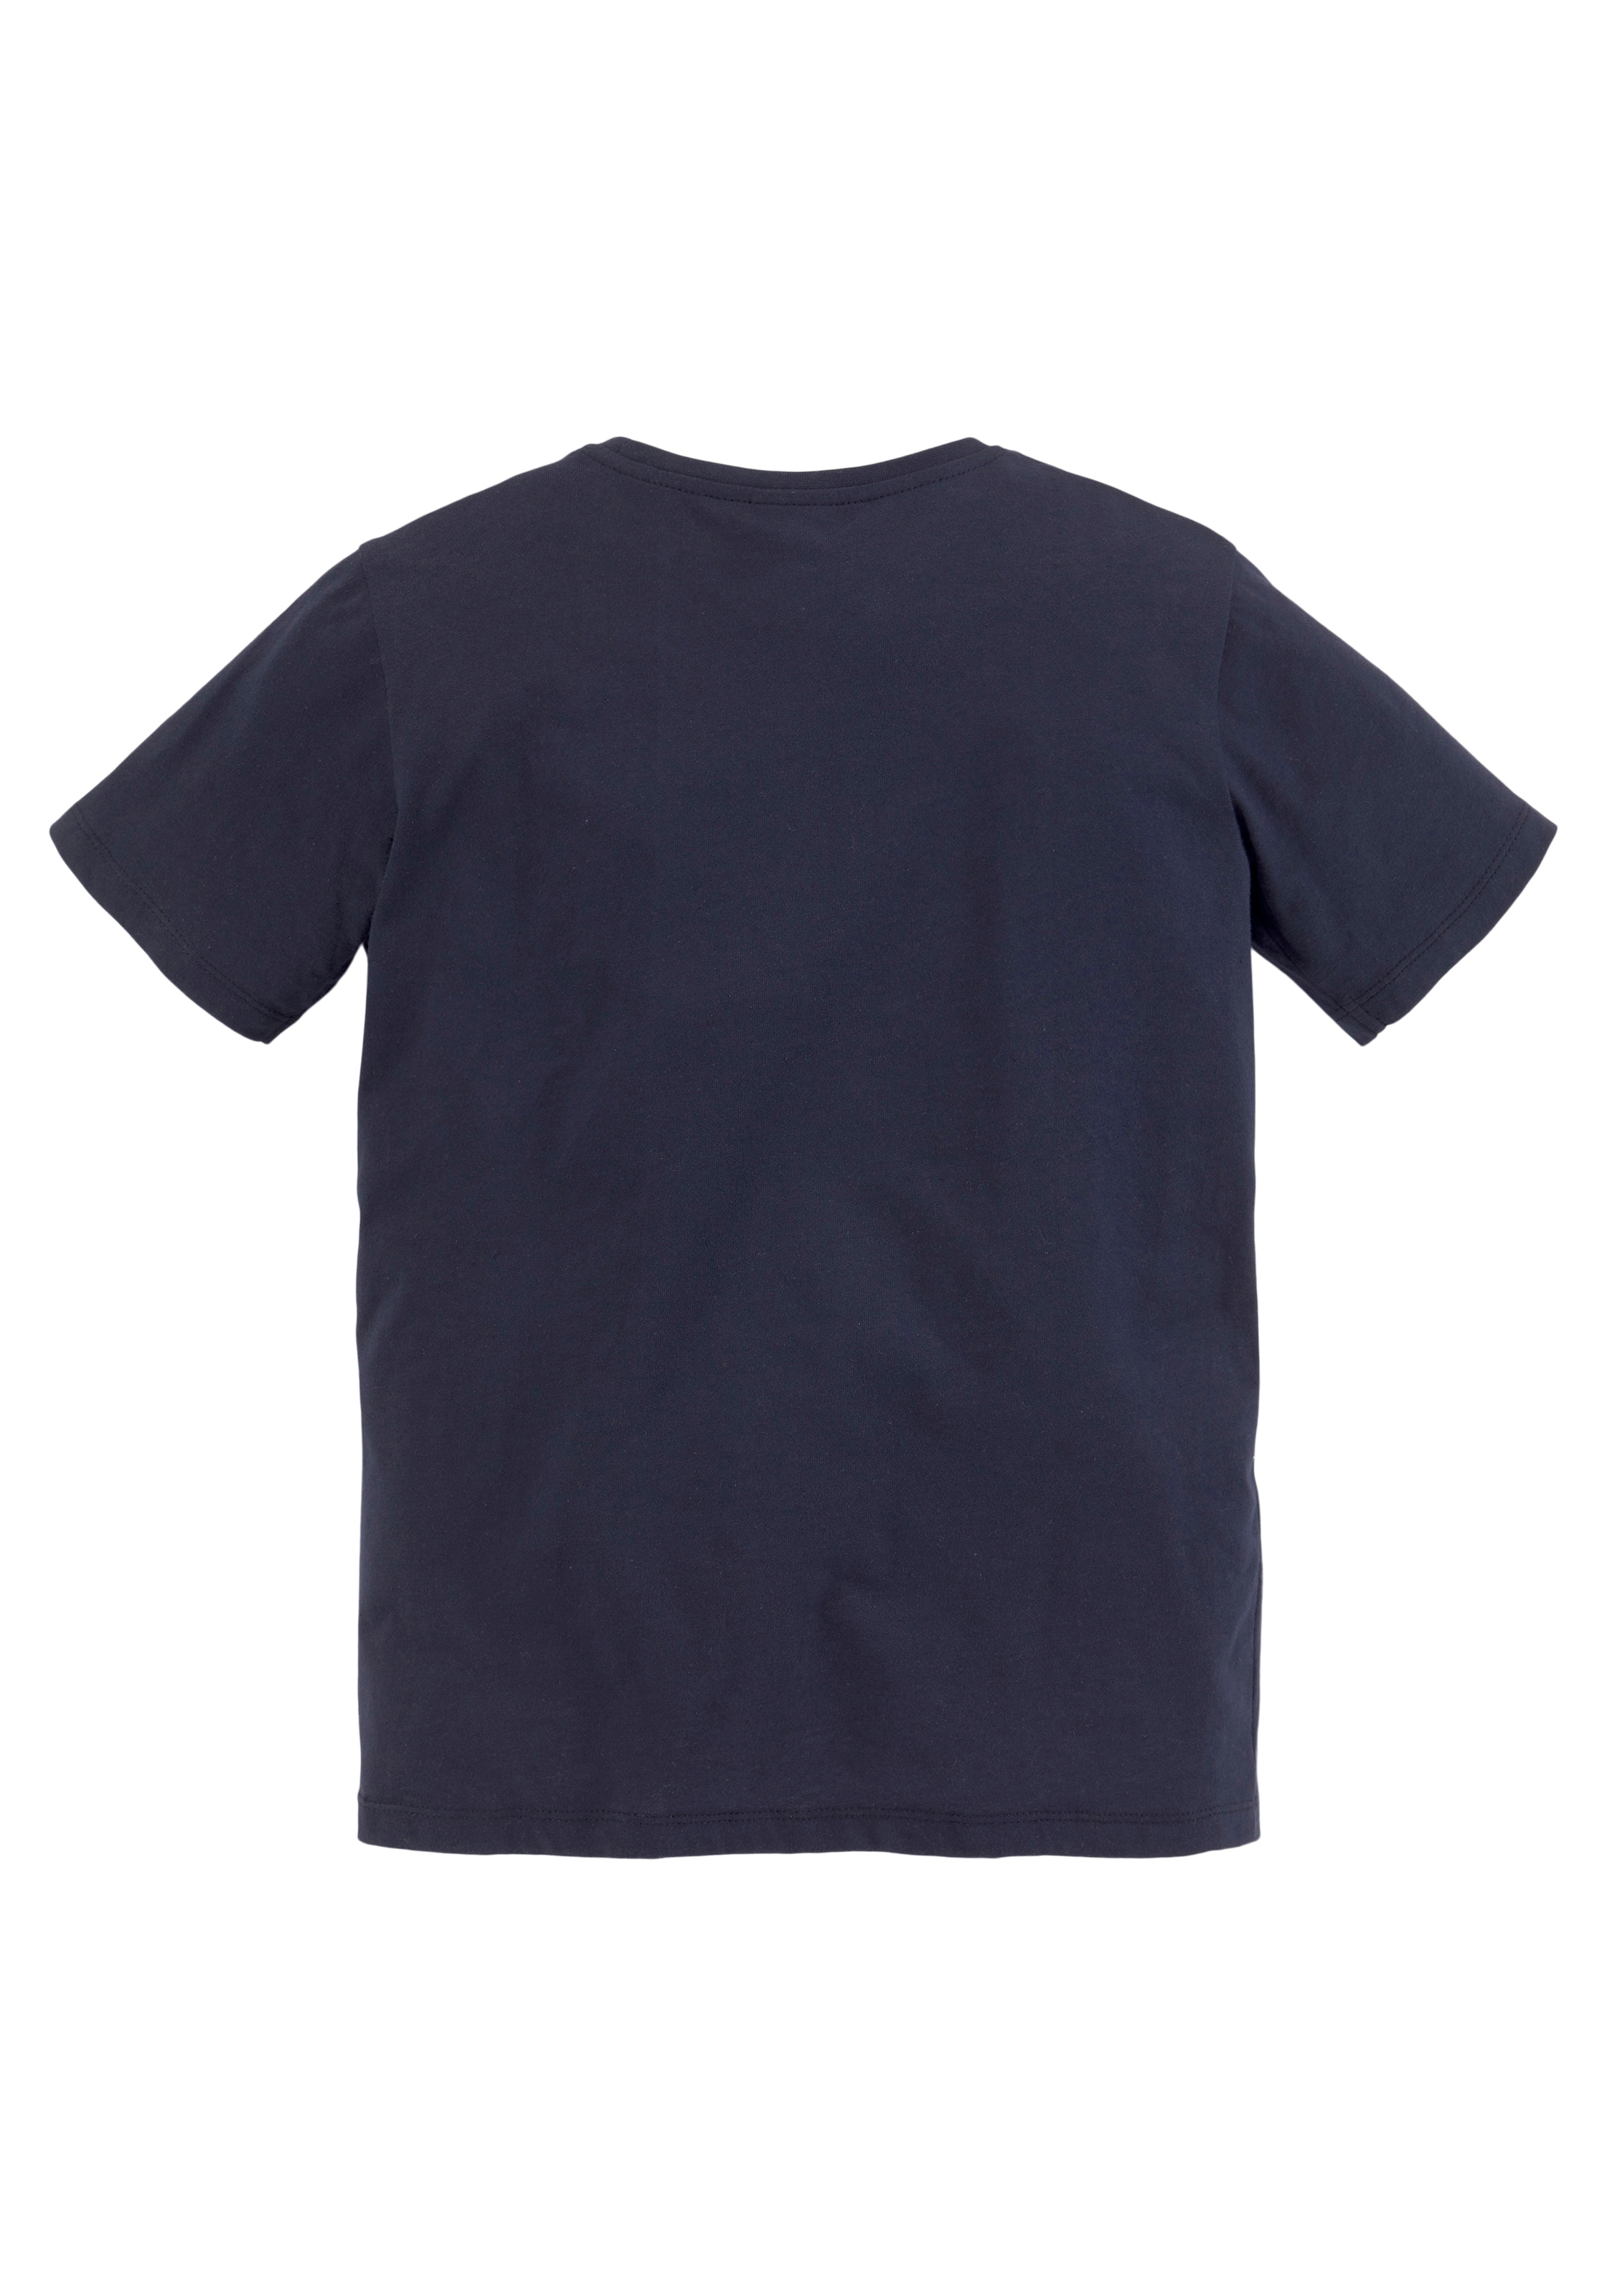 KIDSWORLD T-Shirt & Sweatbermudas, 2 Raten auf kaufen BIKER tlg., (Set, 2)